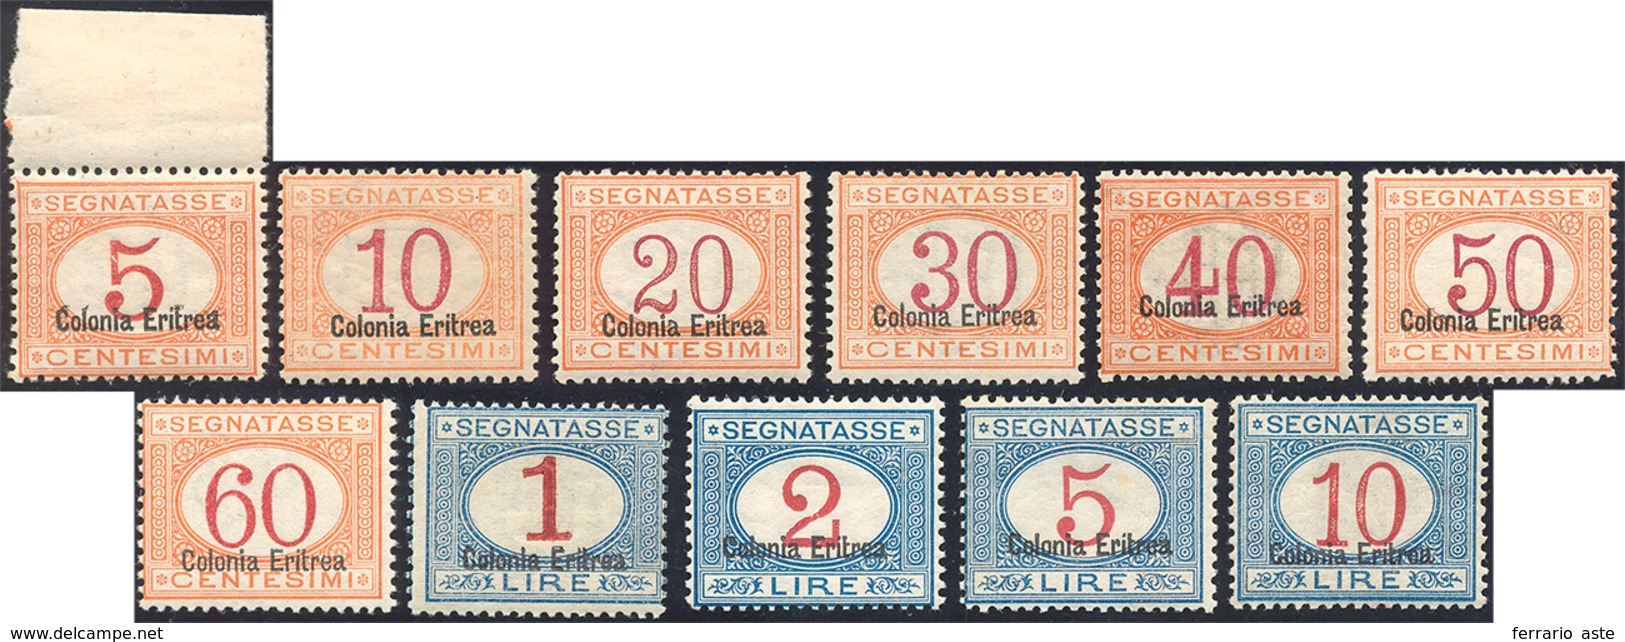 1736 SEGNATASSE 1920/26 - Soprastampati In Basso (14/24), Gomma Originale Integra, Perfetti, Ottima Centr... - Eritrea